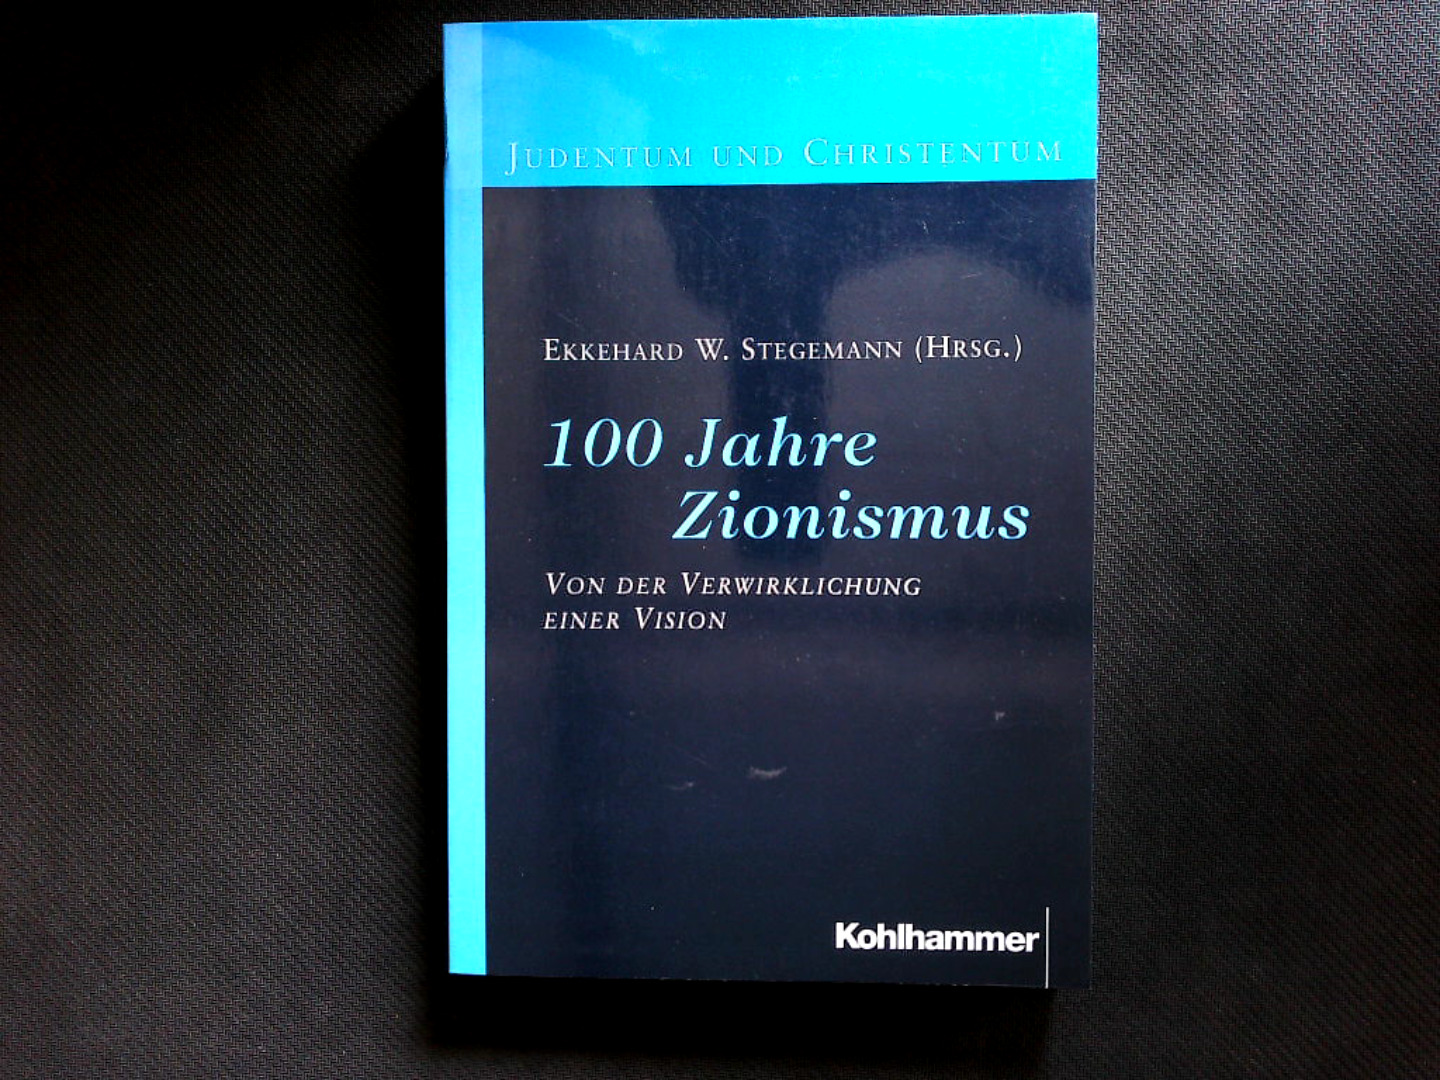 Einhundert Jahre Zionismus: Von der Verwirklichung einer Vision. (Judentum und Christentum). - Stegemann, Ekkehard